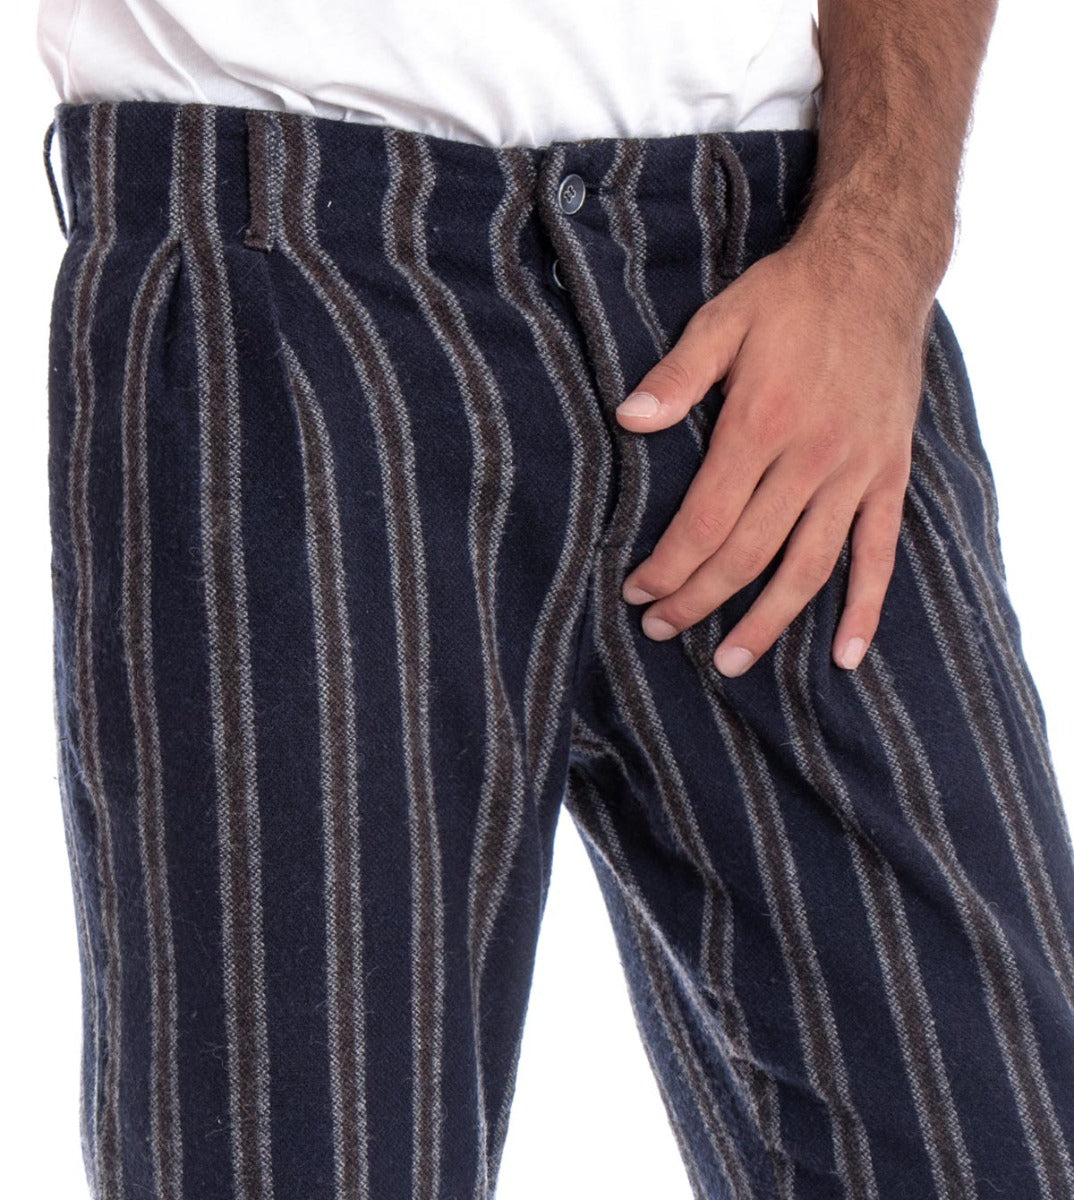 Pantaloni Uomo Tasca America Blu Righe Rigato GIOSAL-P1830A